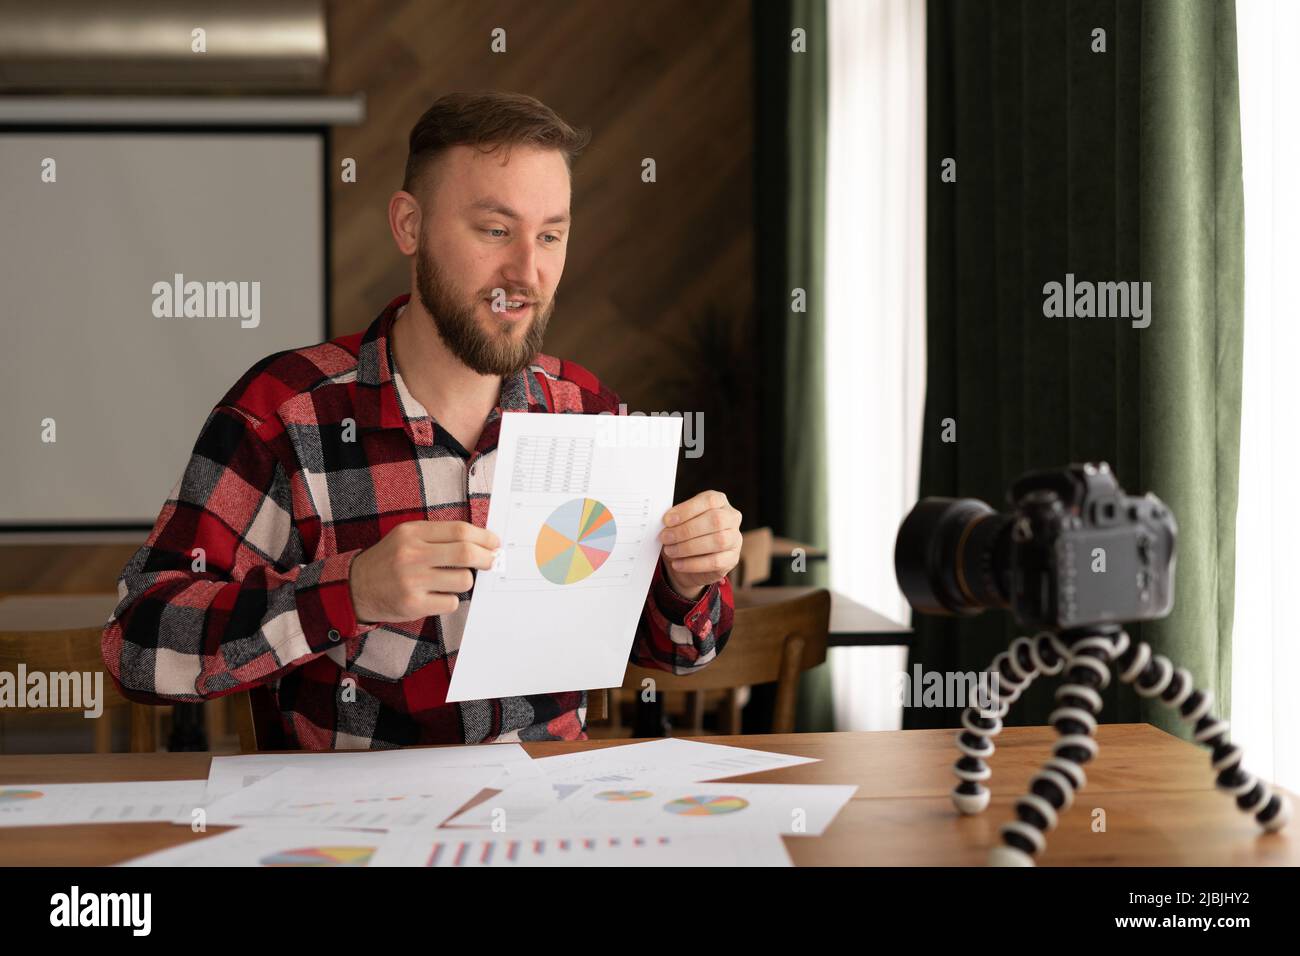 Hombre en camisa mostrar estadísticas gráfico pad hacer vídeo promocional o sesión de fotos en la videocámara a trípode. Vlogger selfie solución de venta o asesor financiero Foto de stock